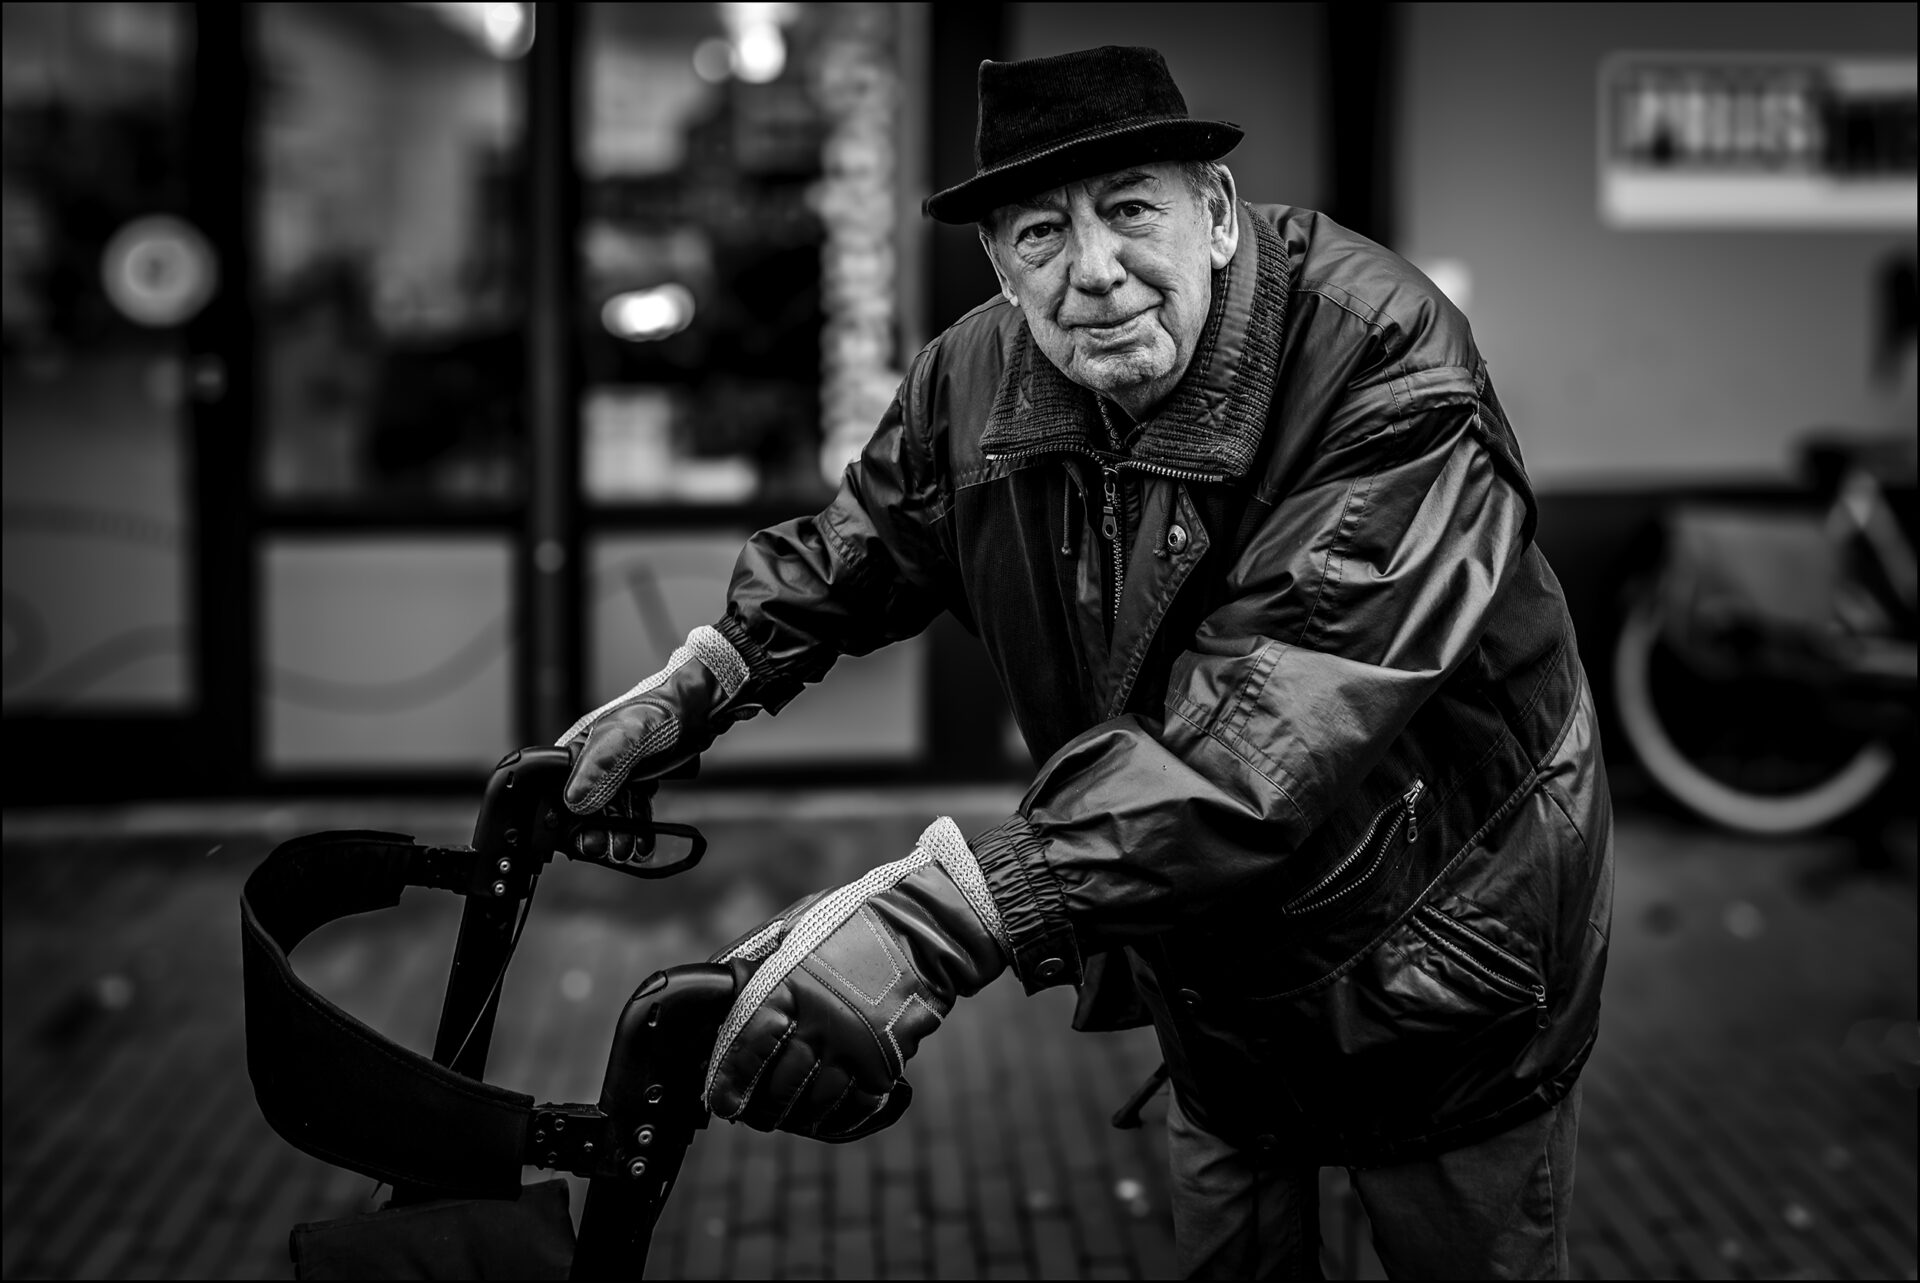 Themagroep Straatfotografie, een ochtend in Eindhoven